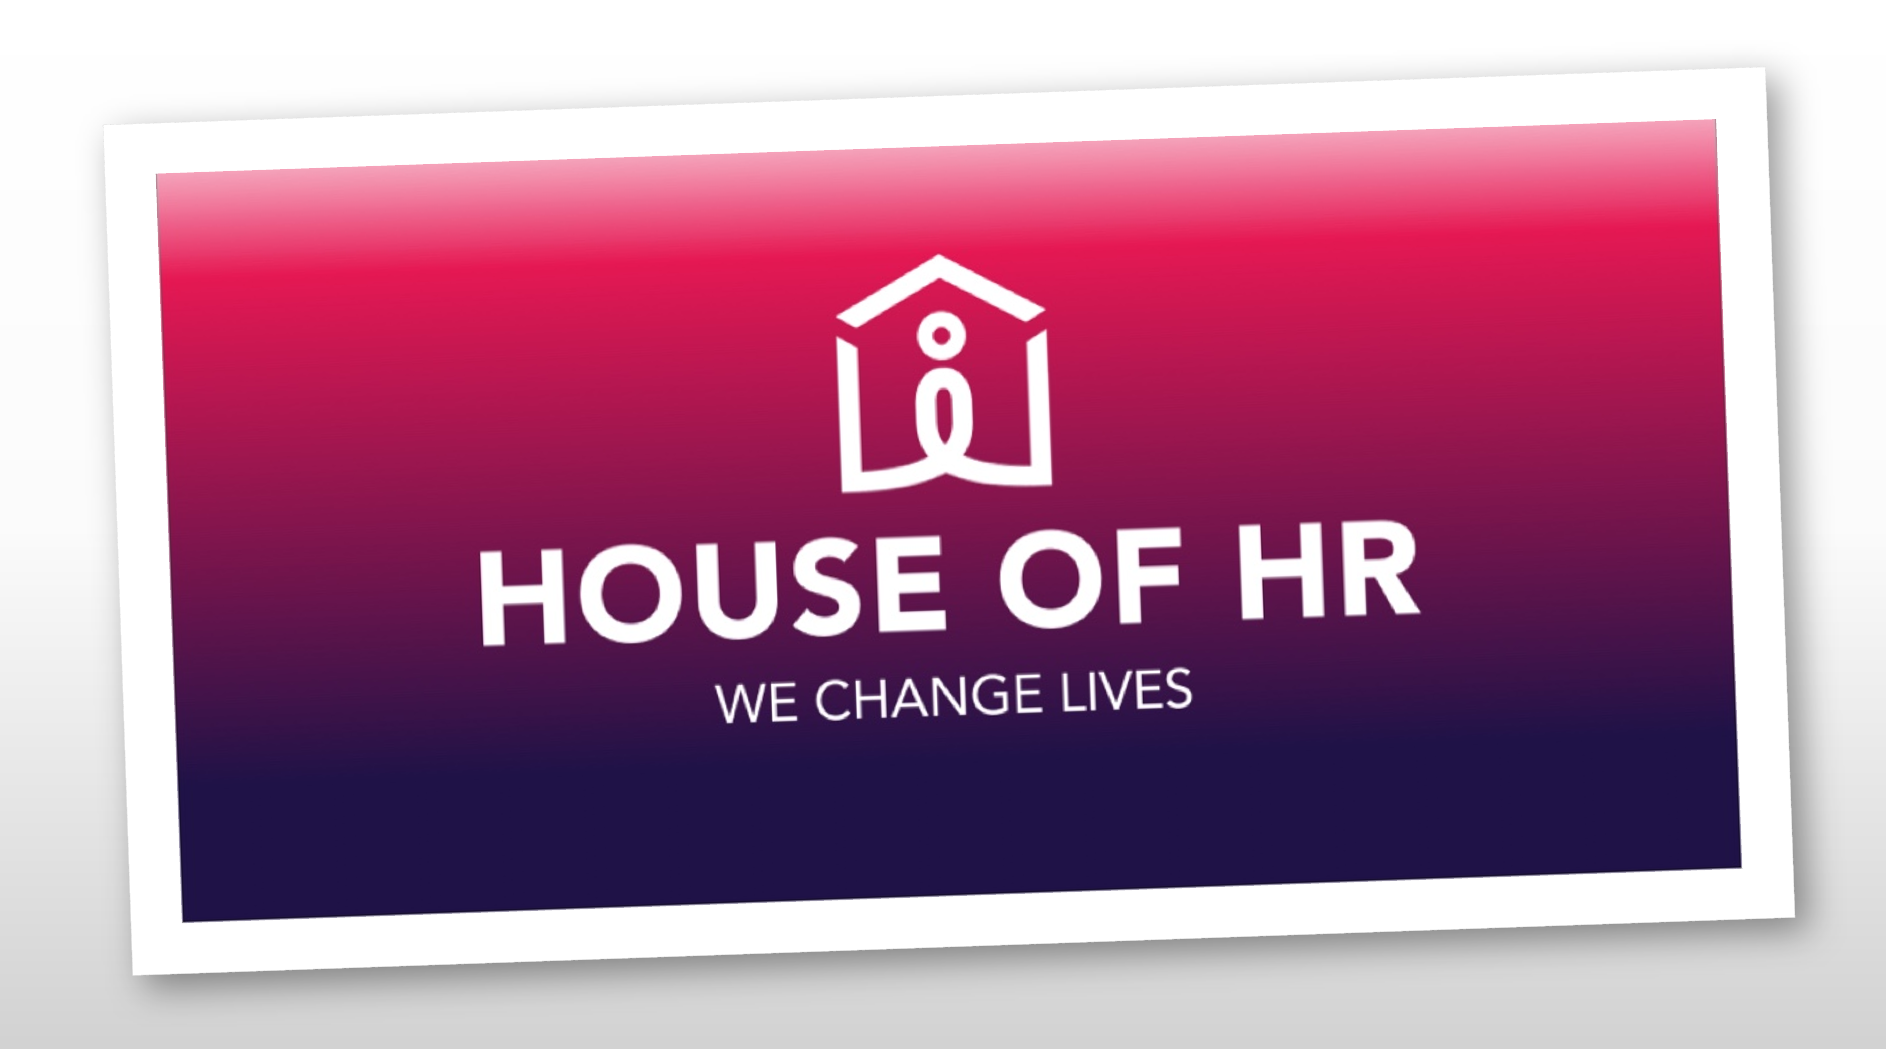 Uitzendgroep House of HR doet dertiende overname dit jaar